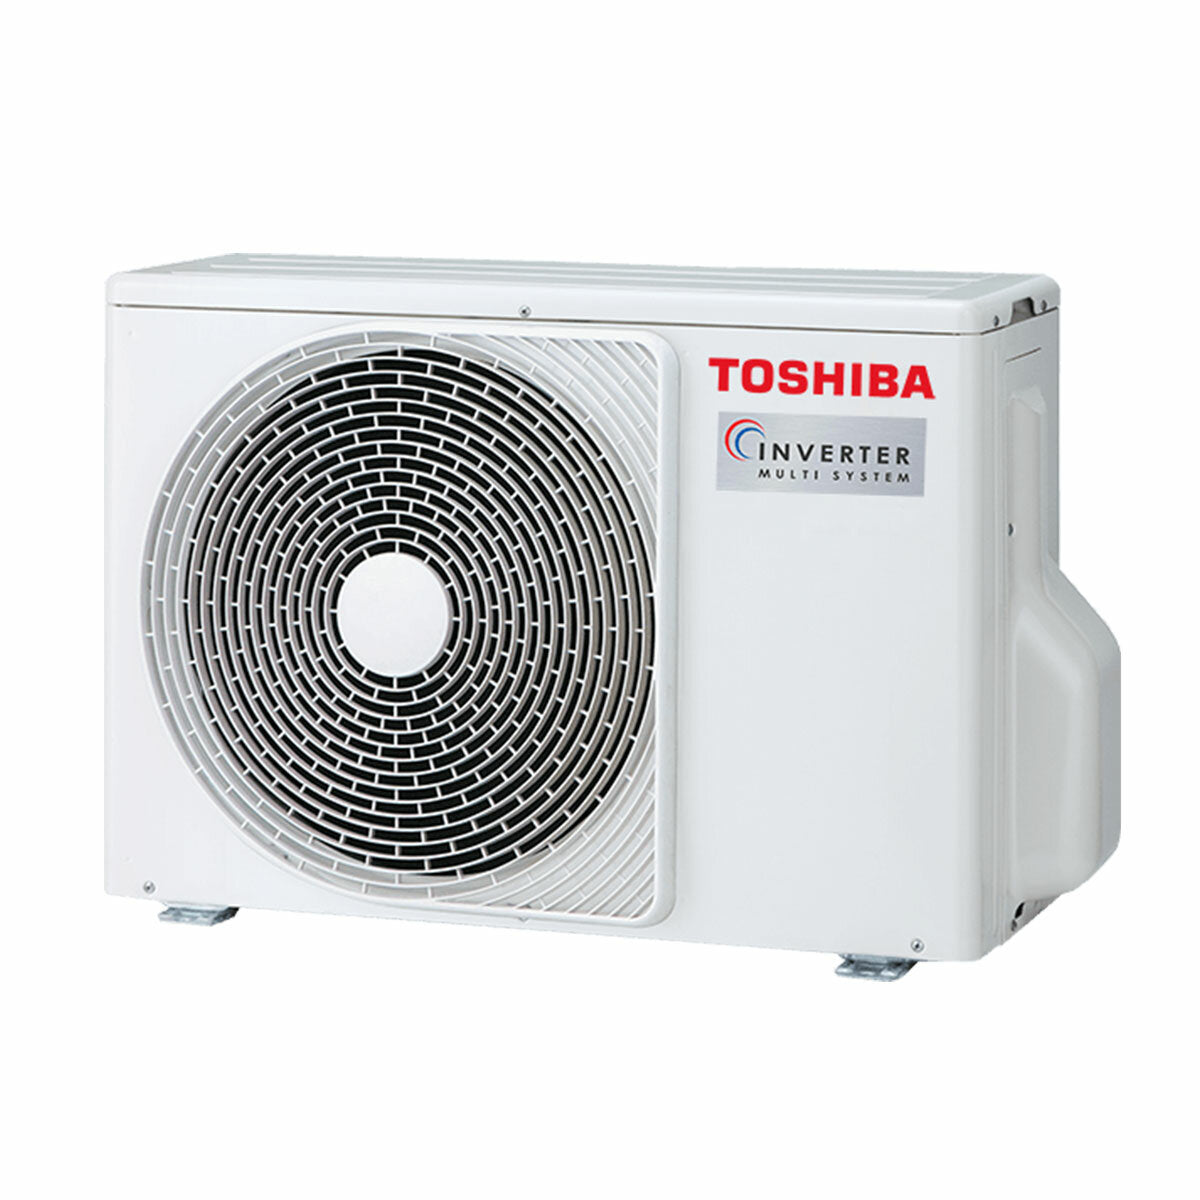 Toshiba SHORAI Edge Black Dual-Split-Klimaanlage 5000+7000 BTU Wechselrichter A++ WLAN-Außeneinheit 4 kW 